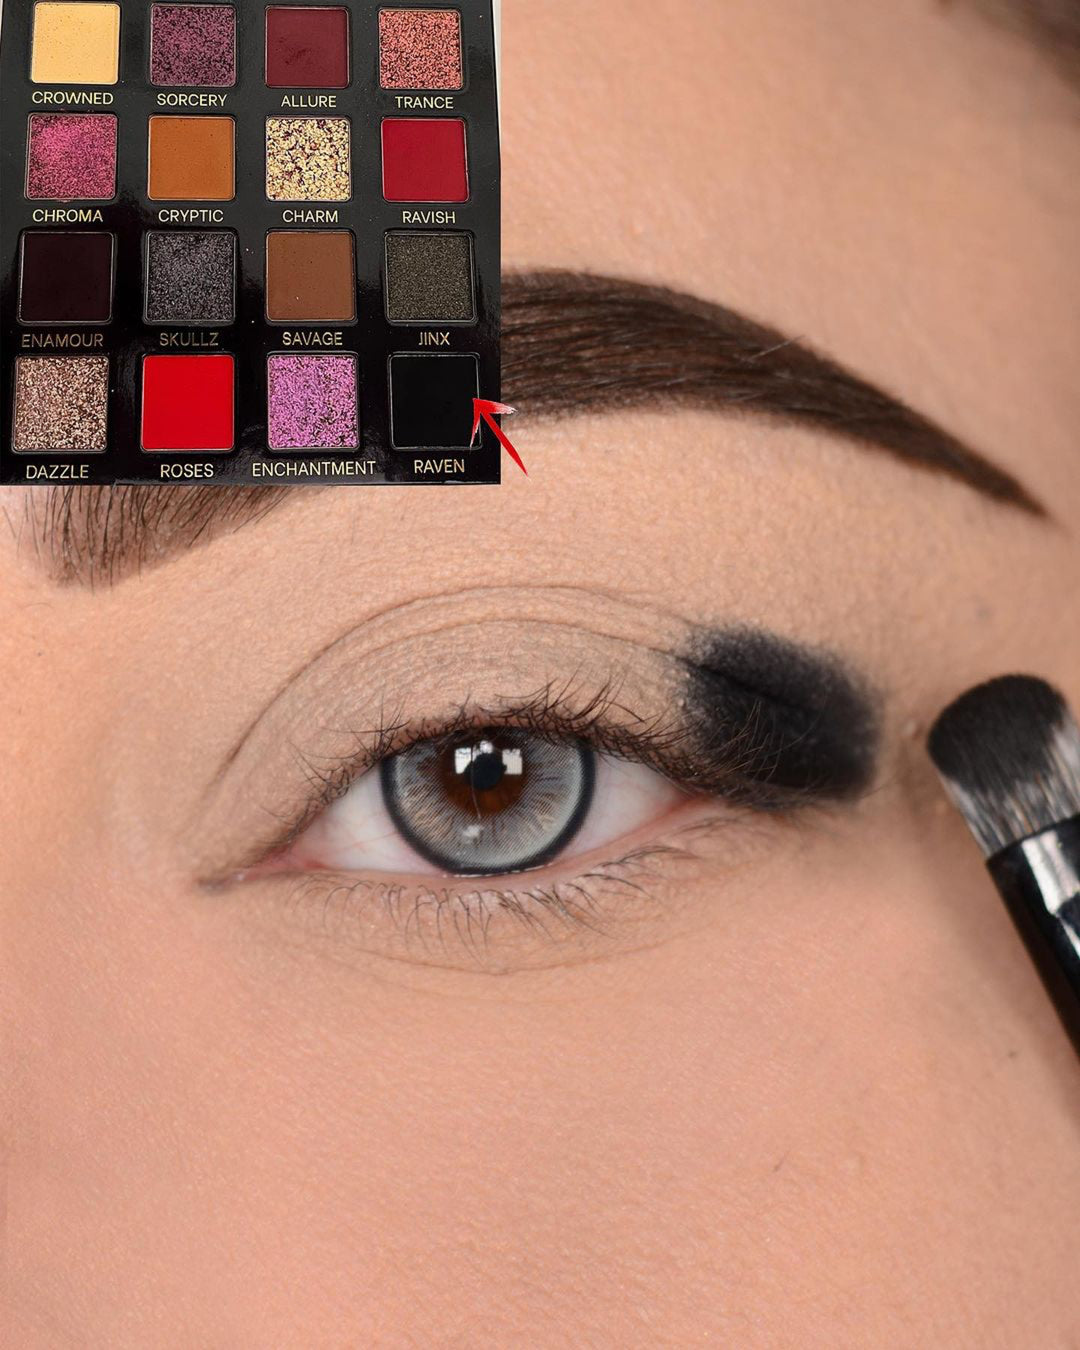 Eye makeup step by step tutorial 